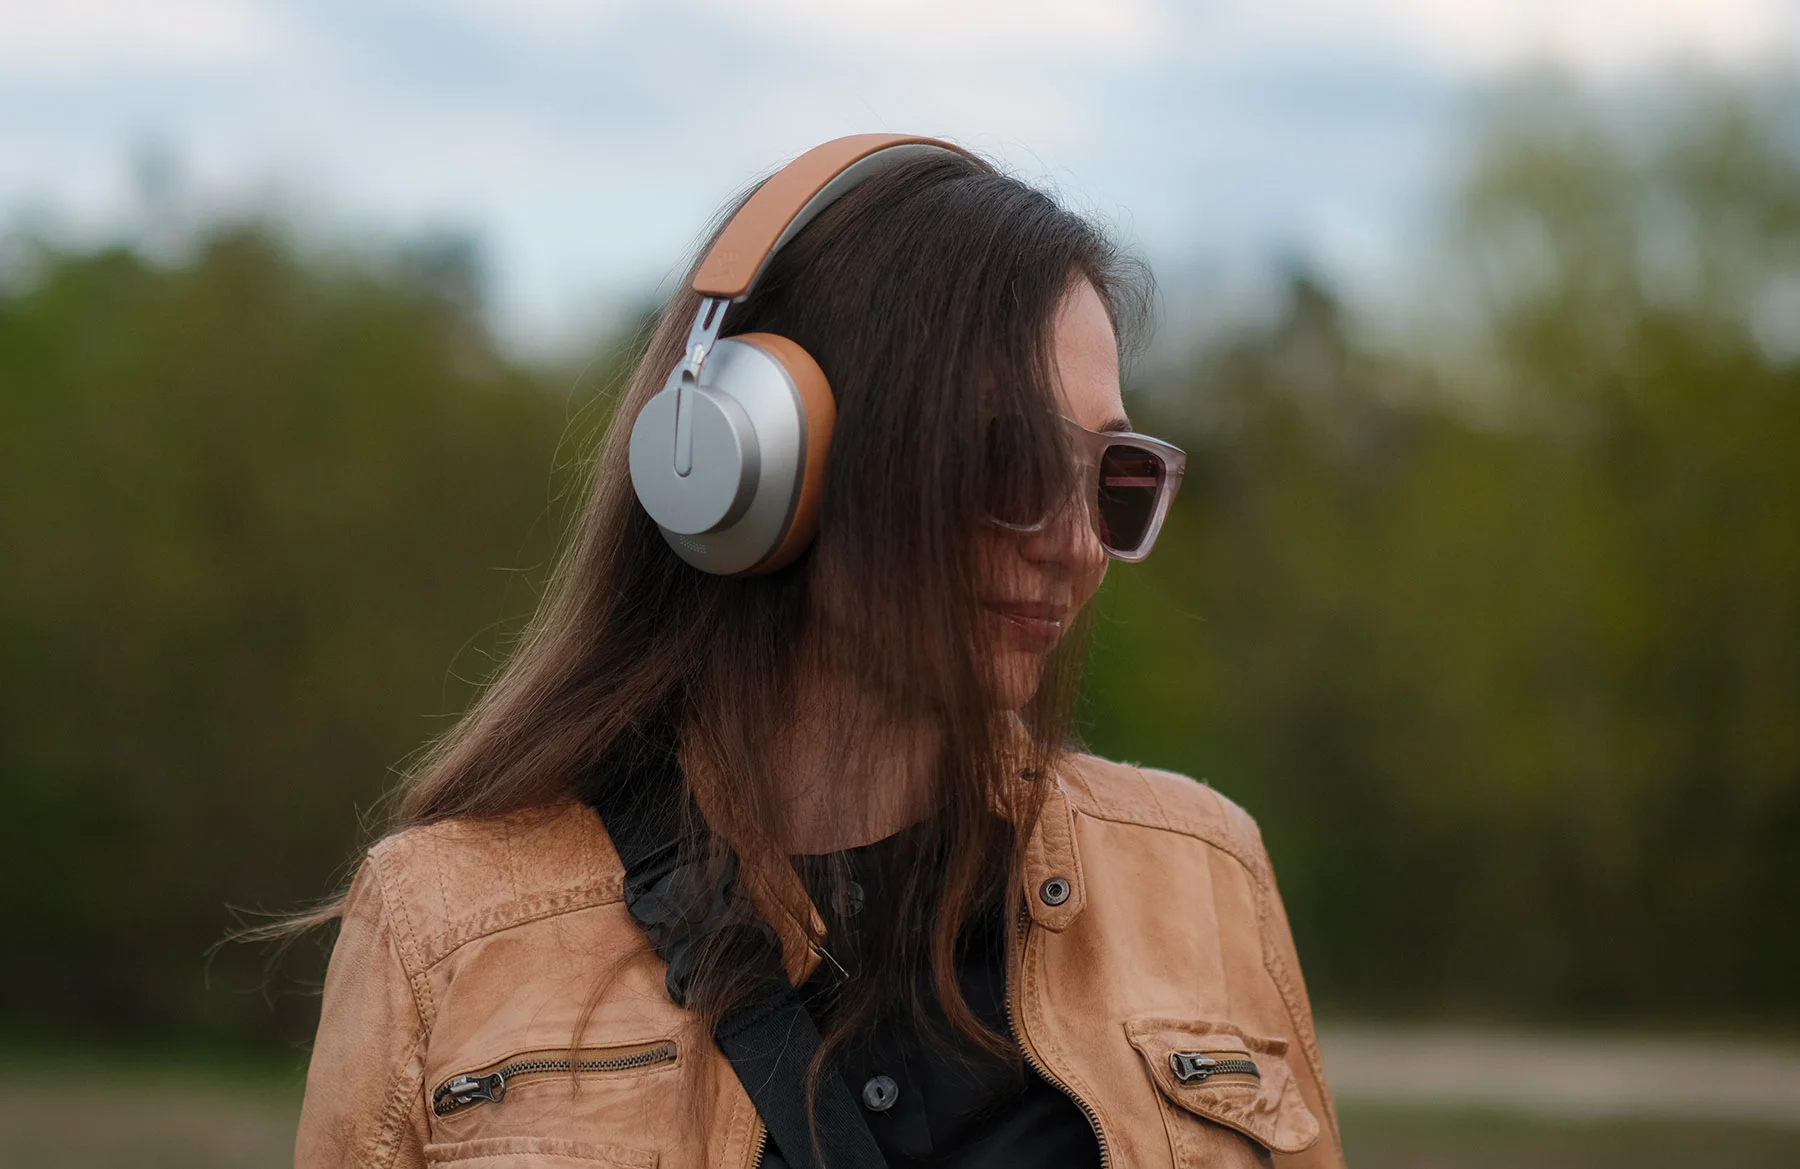 Огляд Bloody MH390: lifestyle-навушники від ігрового бренду